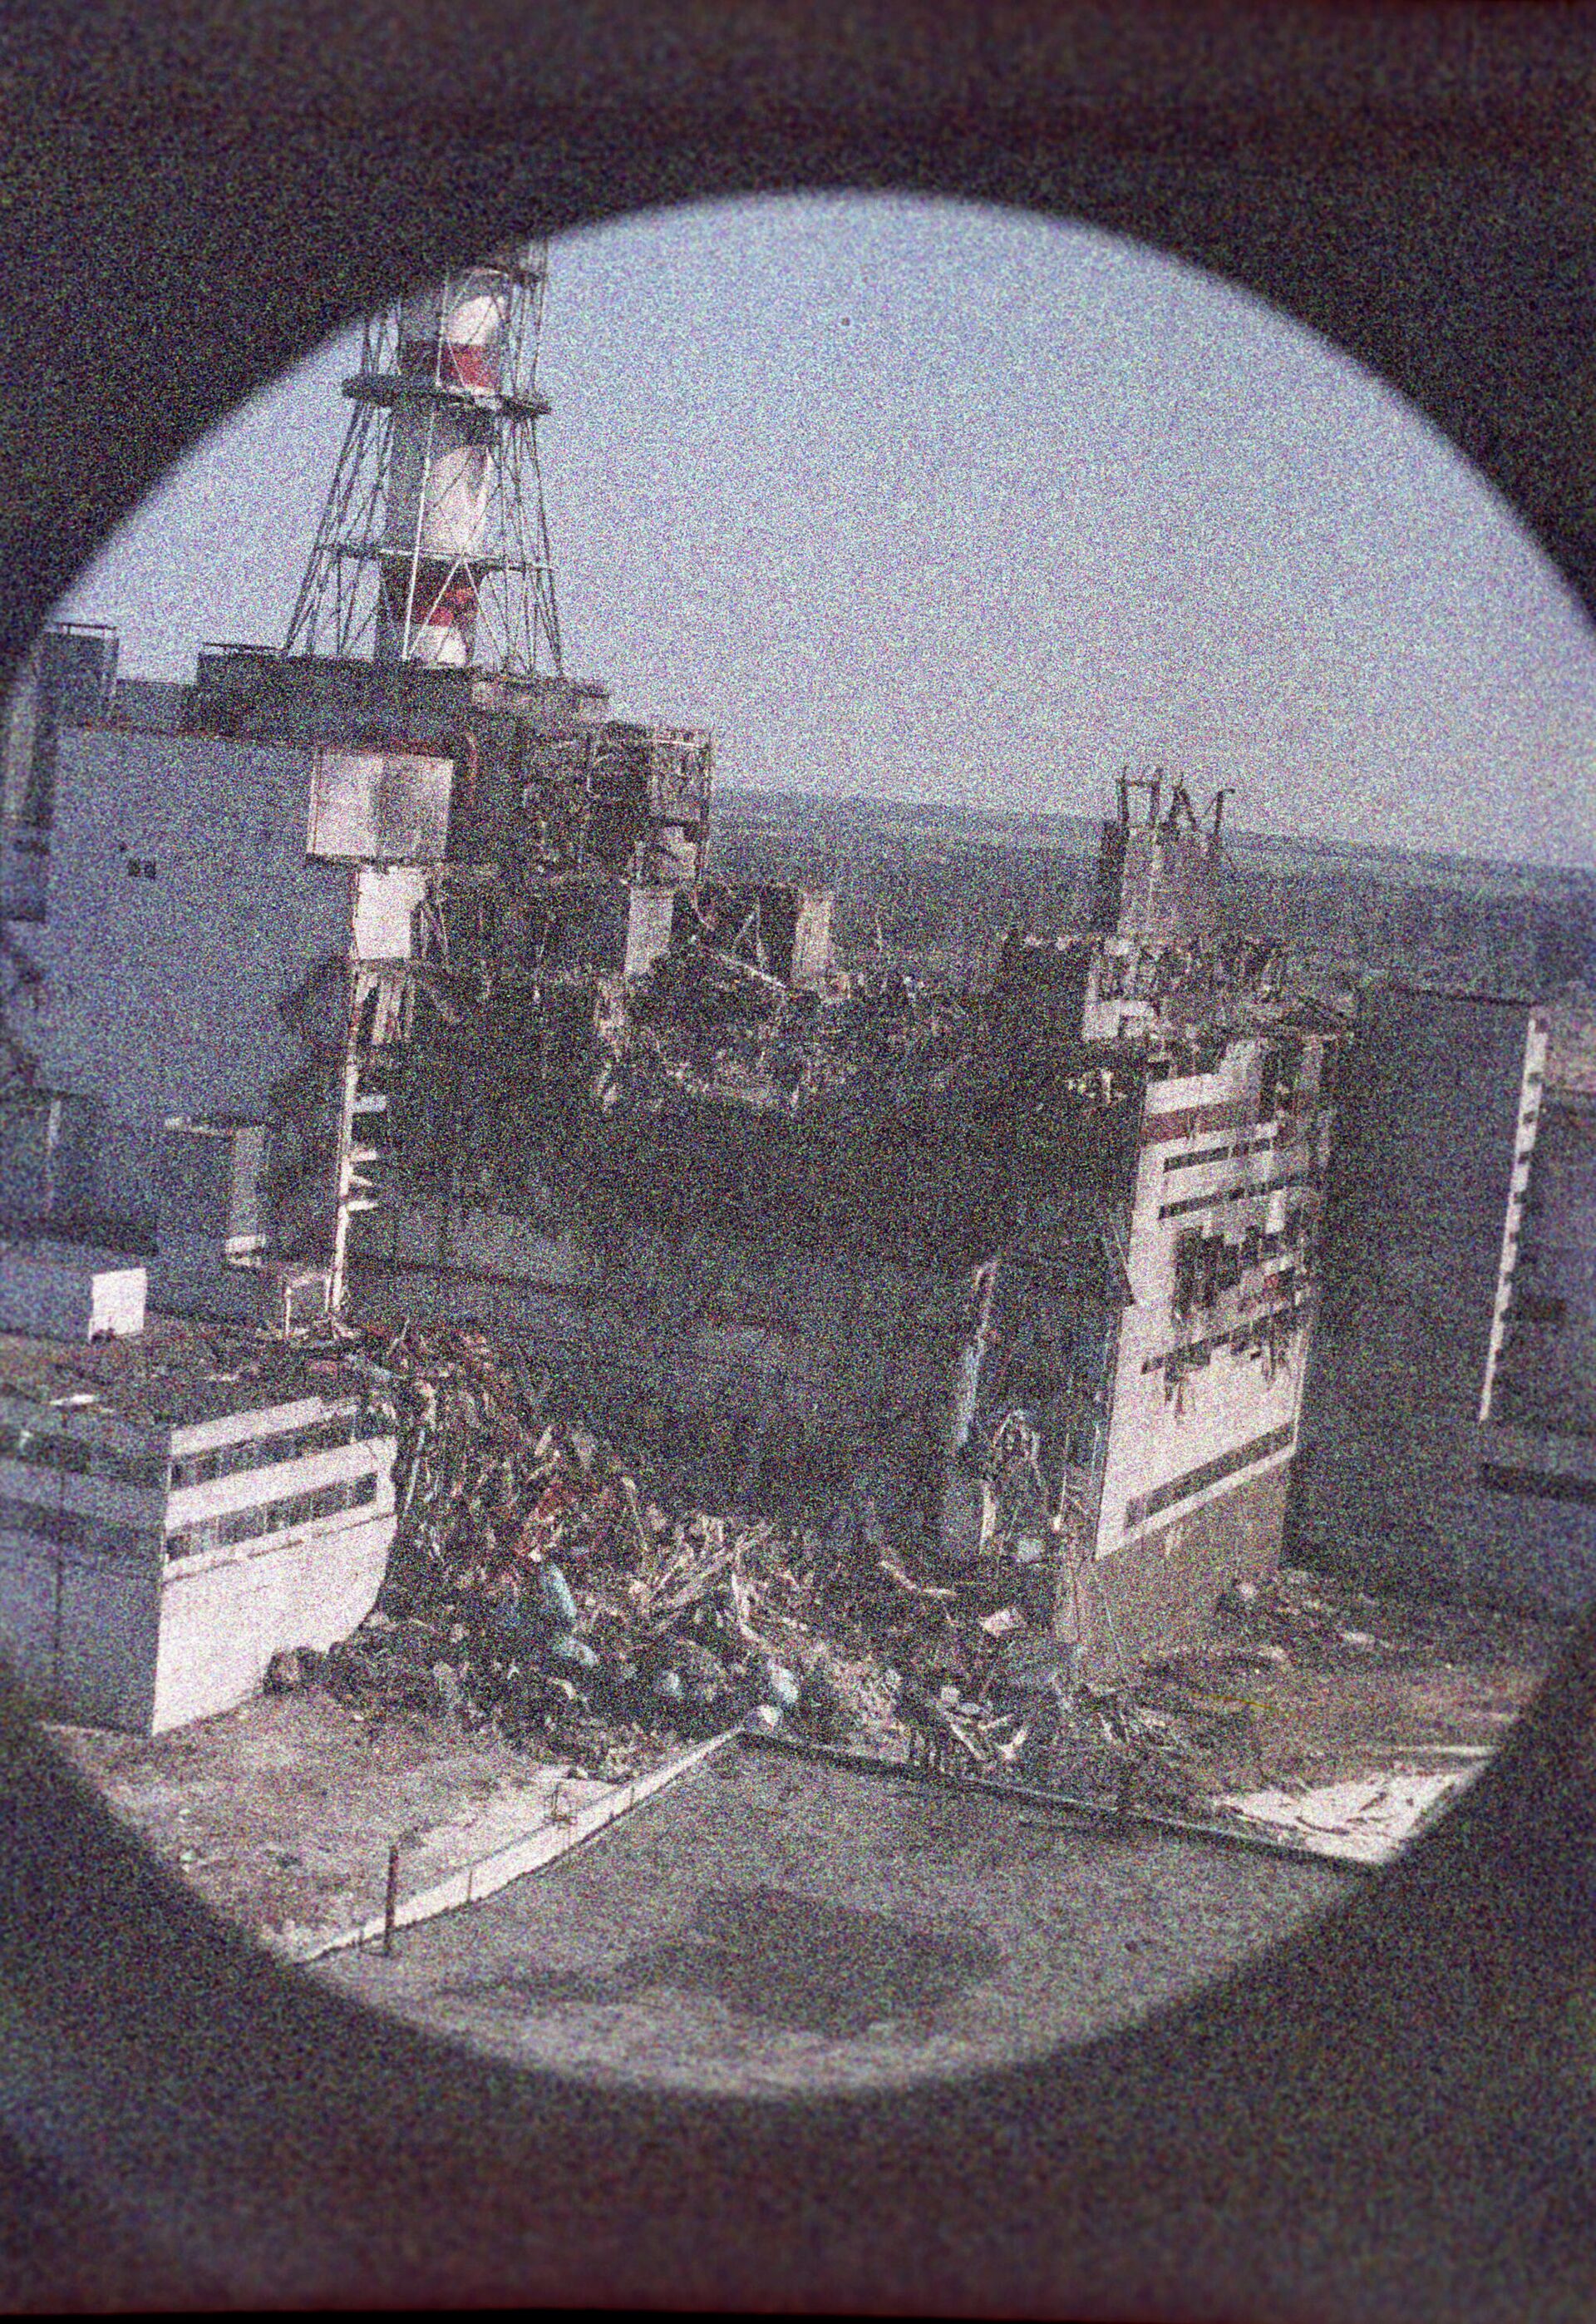 Чернобыльская атомная электростанция. Вид на 4-й энергоблок АЭС в первые дни после аварии. - Sputnik Узбекистан, 1920, 13.05.2021